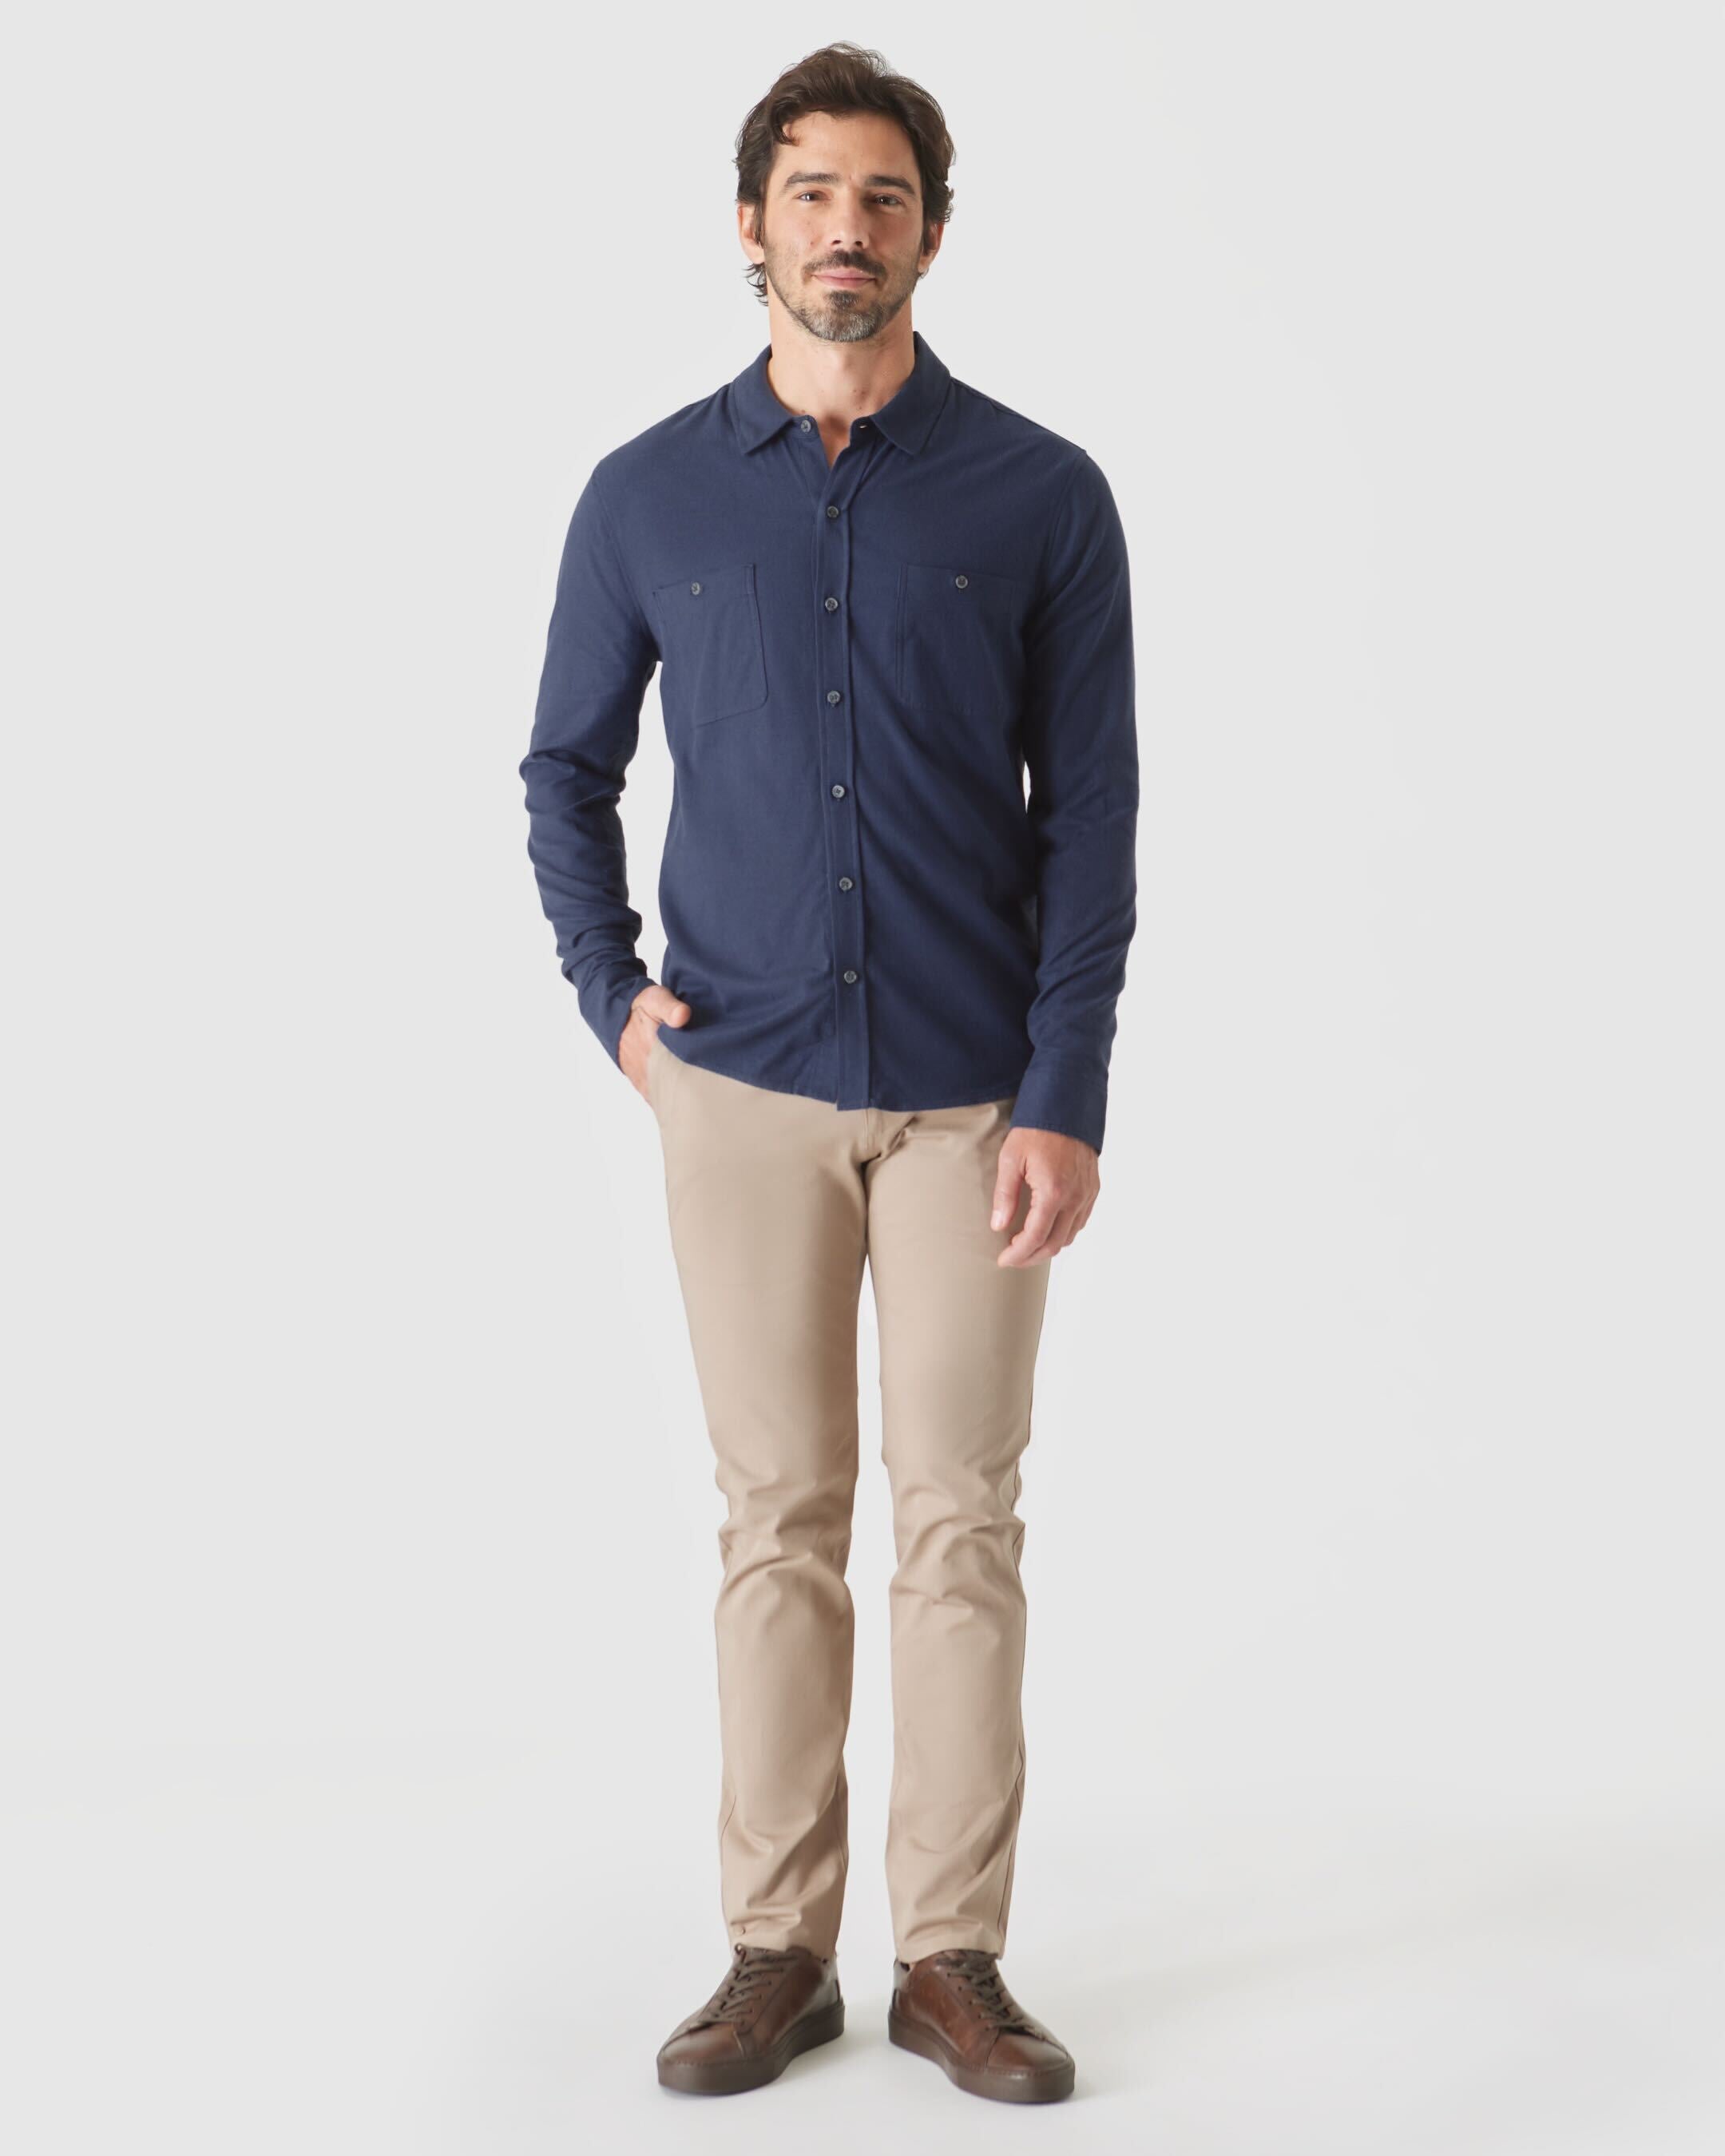 Long Sleeve Lightweight Flannel Shirt 2-Pack